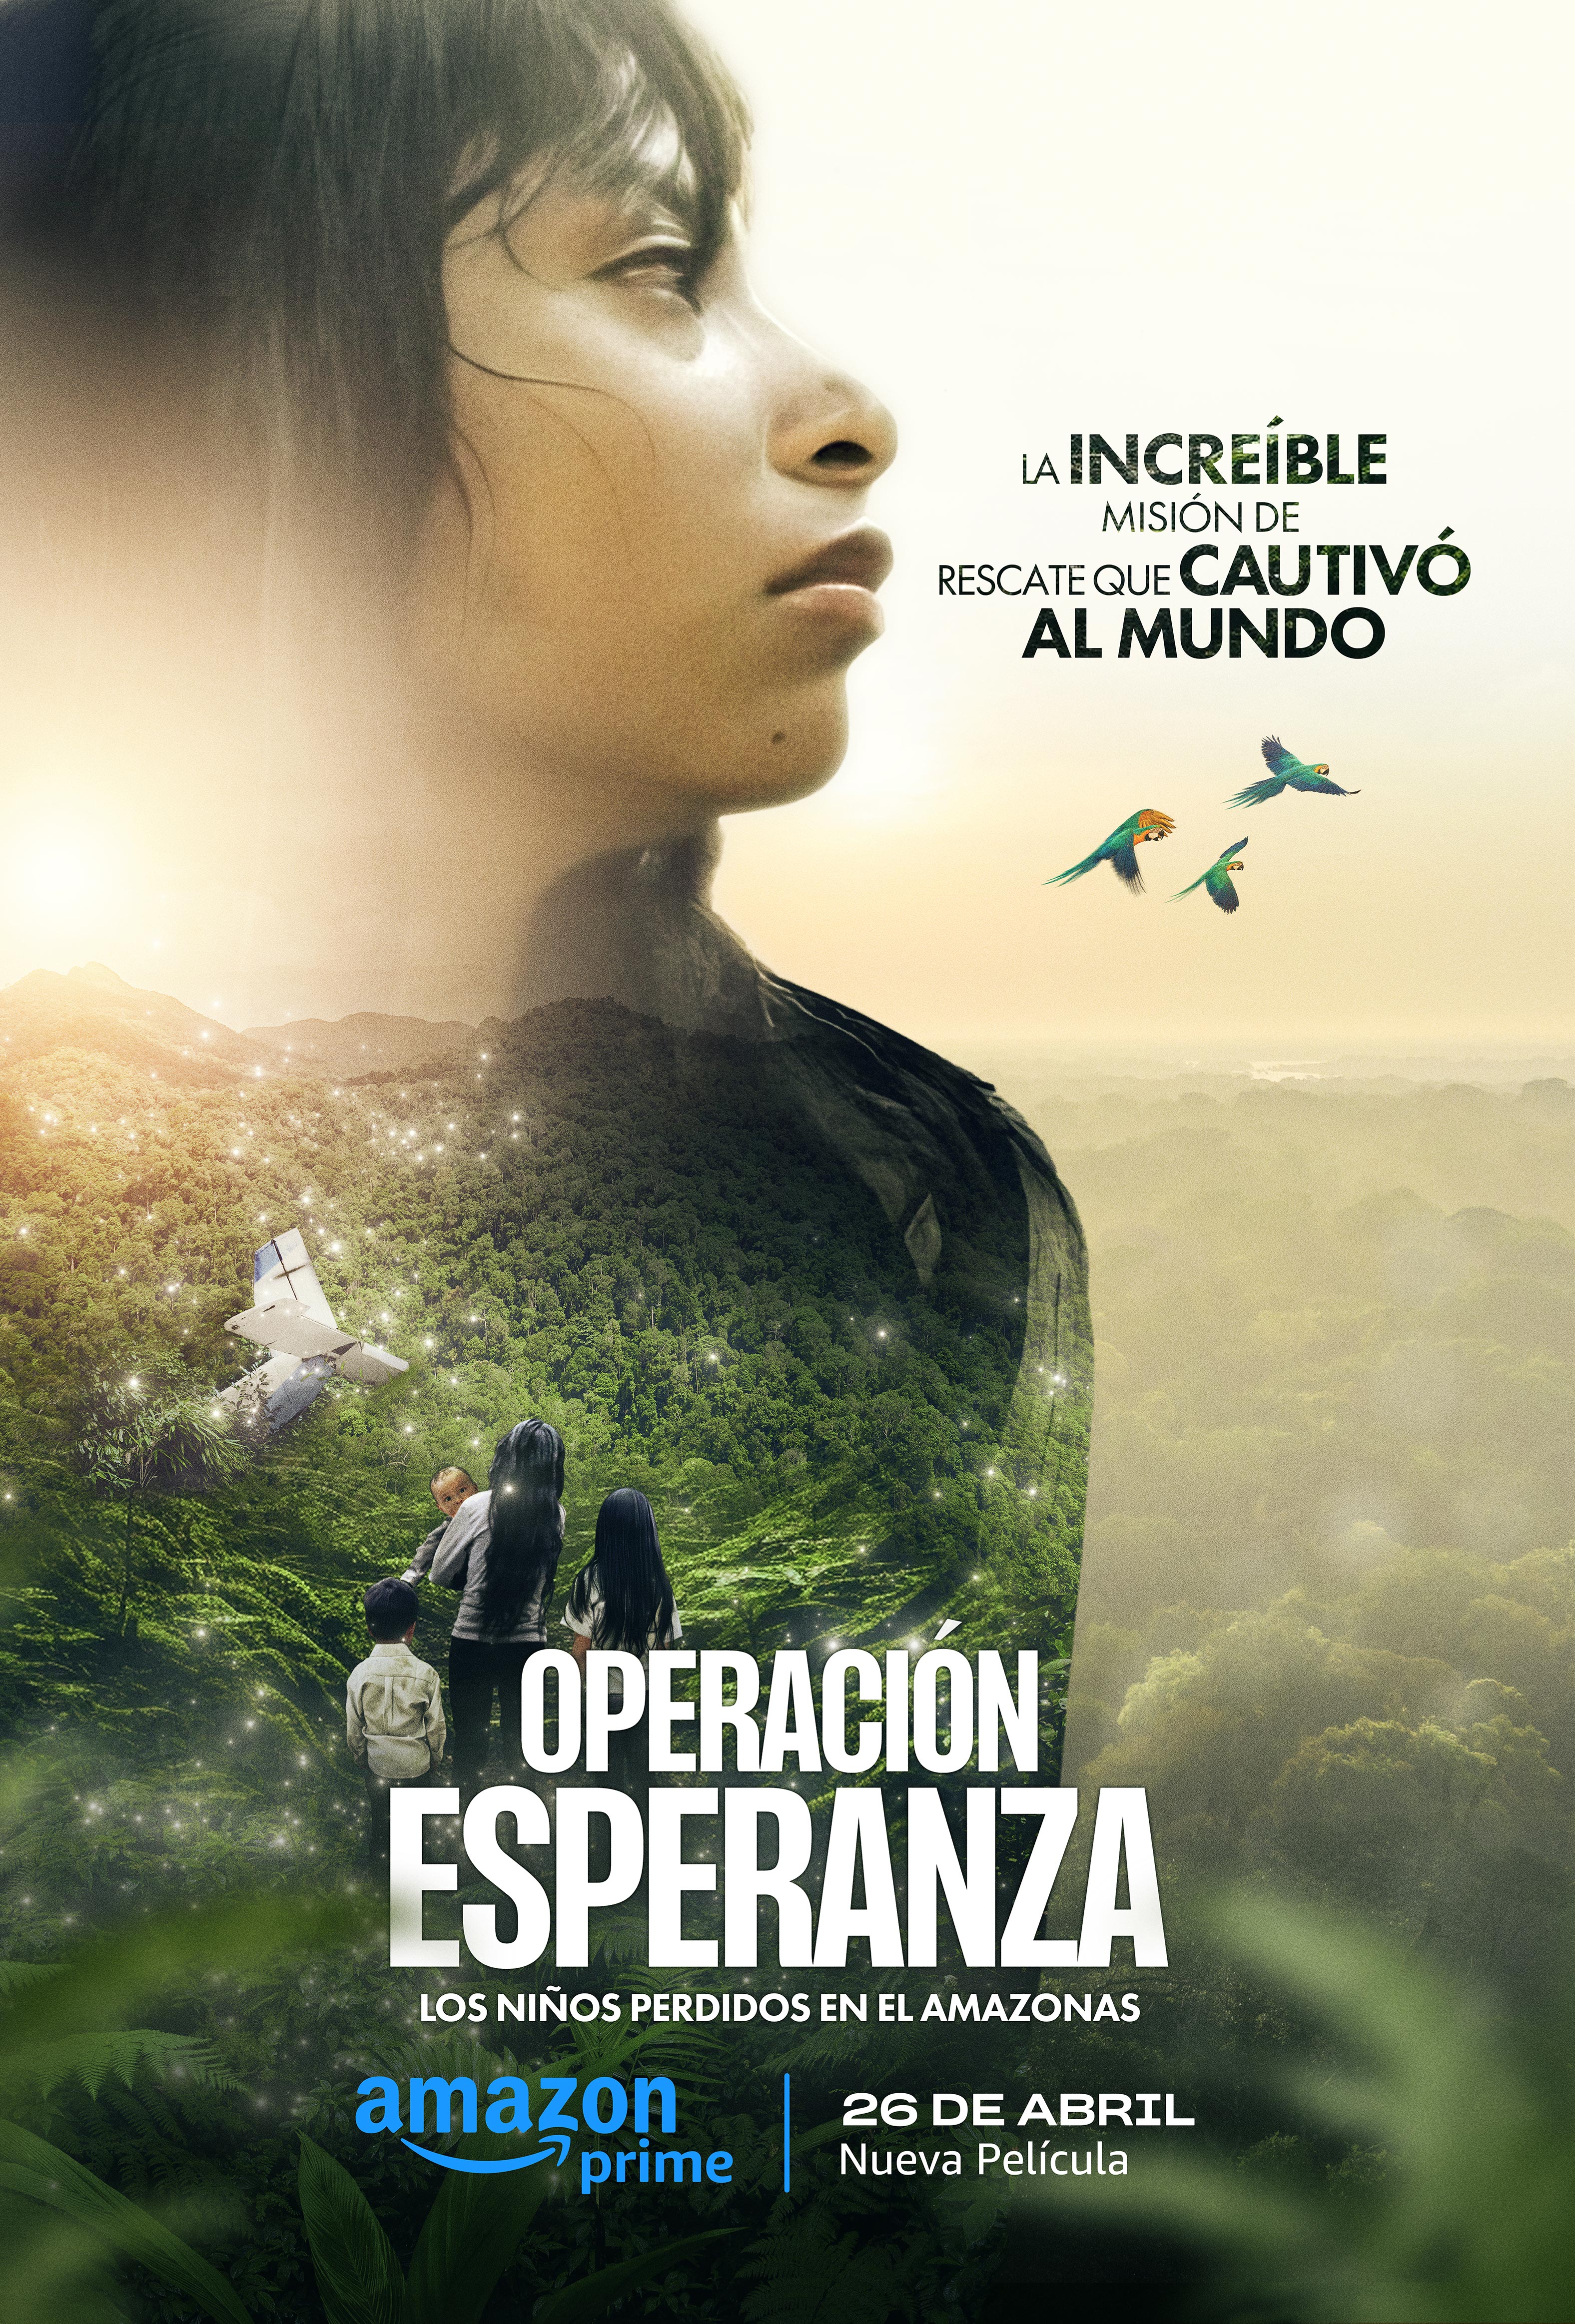 Prime Video presenta el nuevo documental Operación Esperanza: Los niños perdidos en el Amazonas narrado por Gloria “Goyo” Emilse Martínez